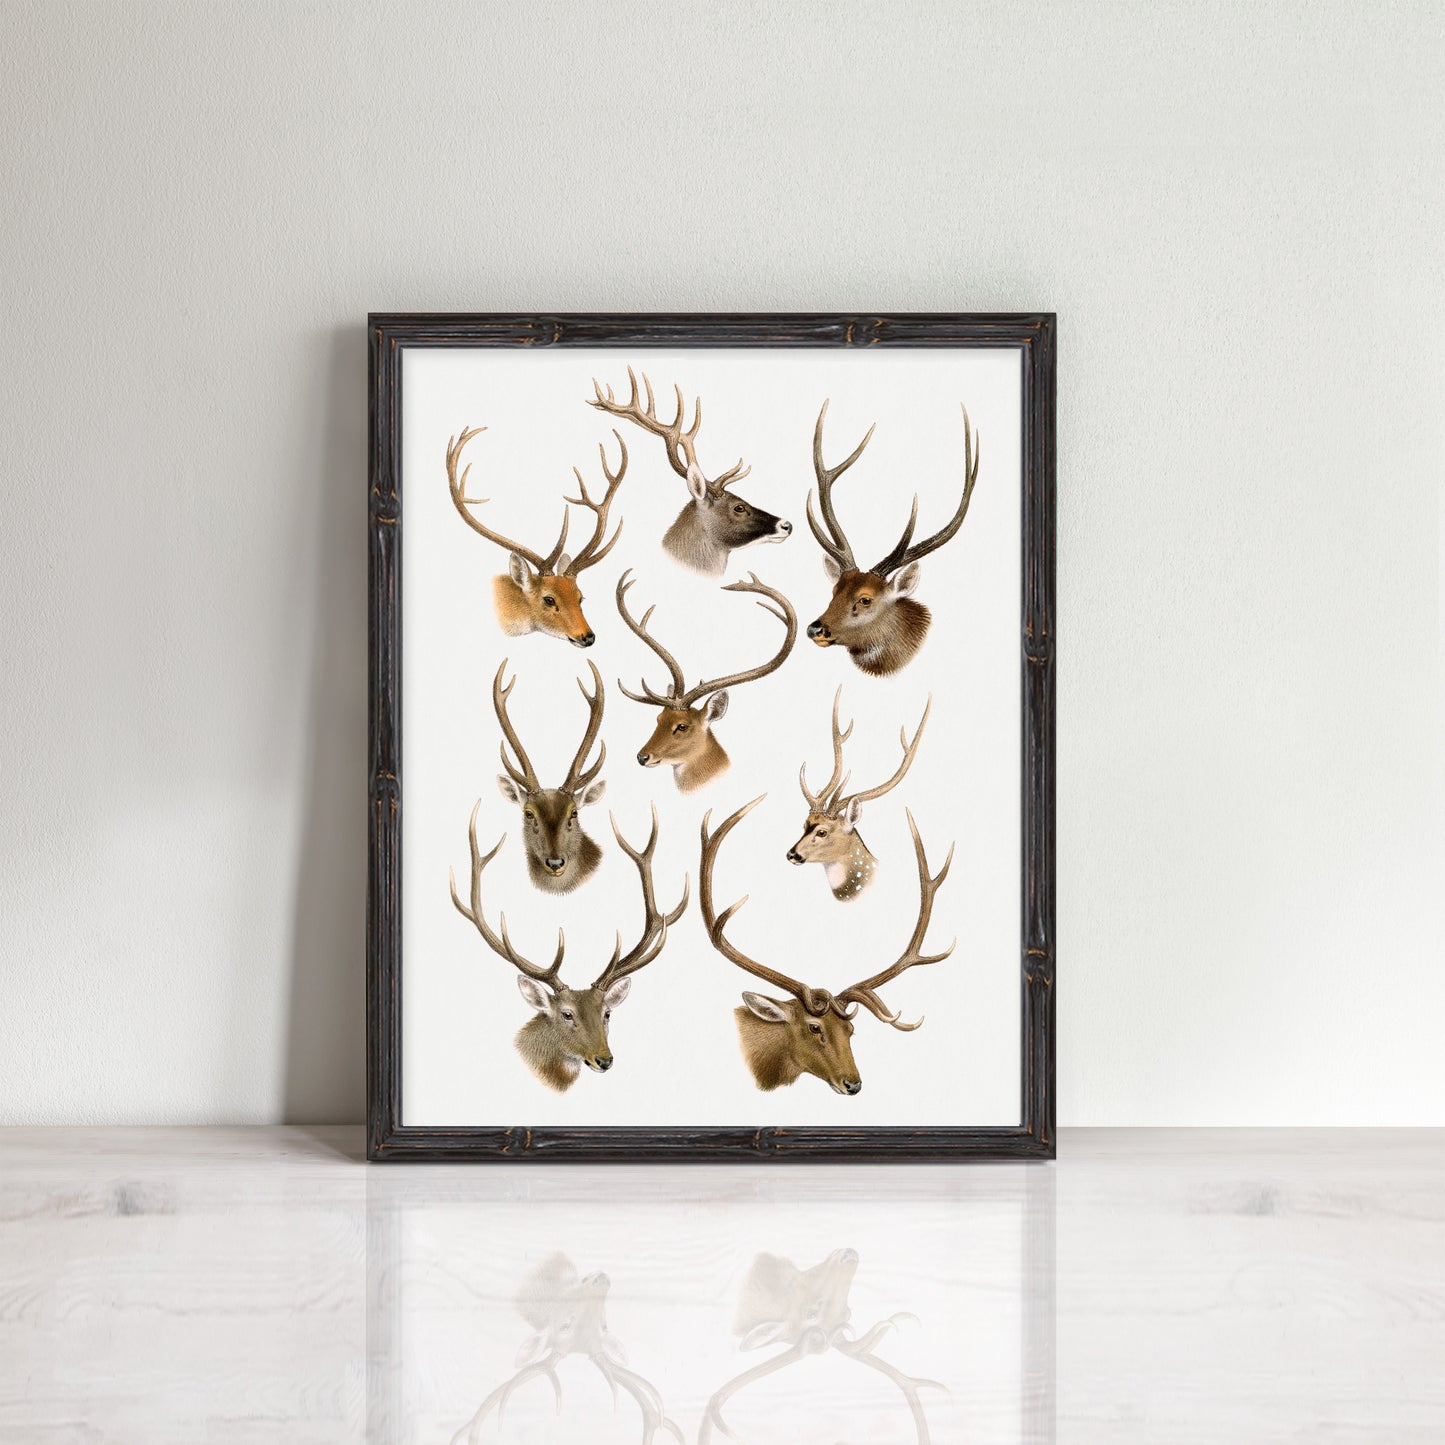 vintage deer head illustrations in a frame